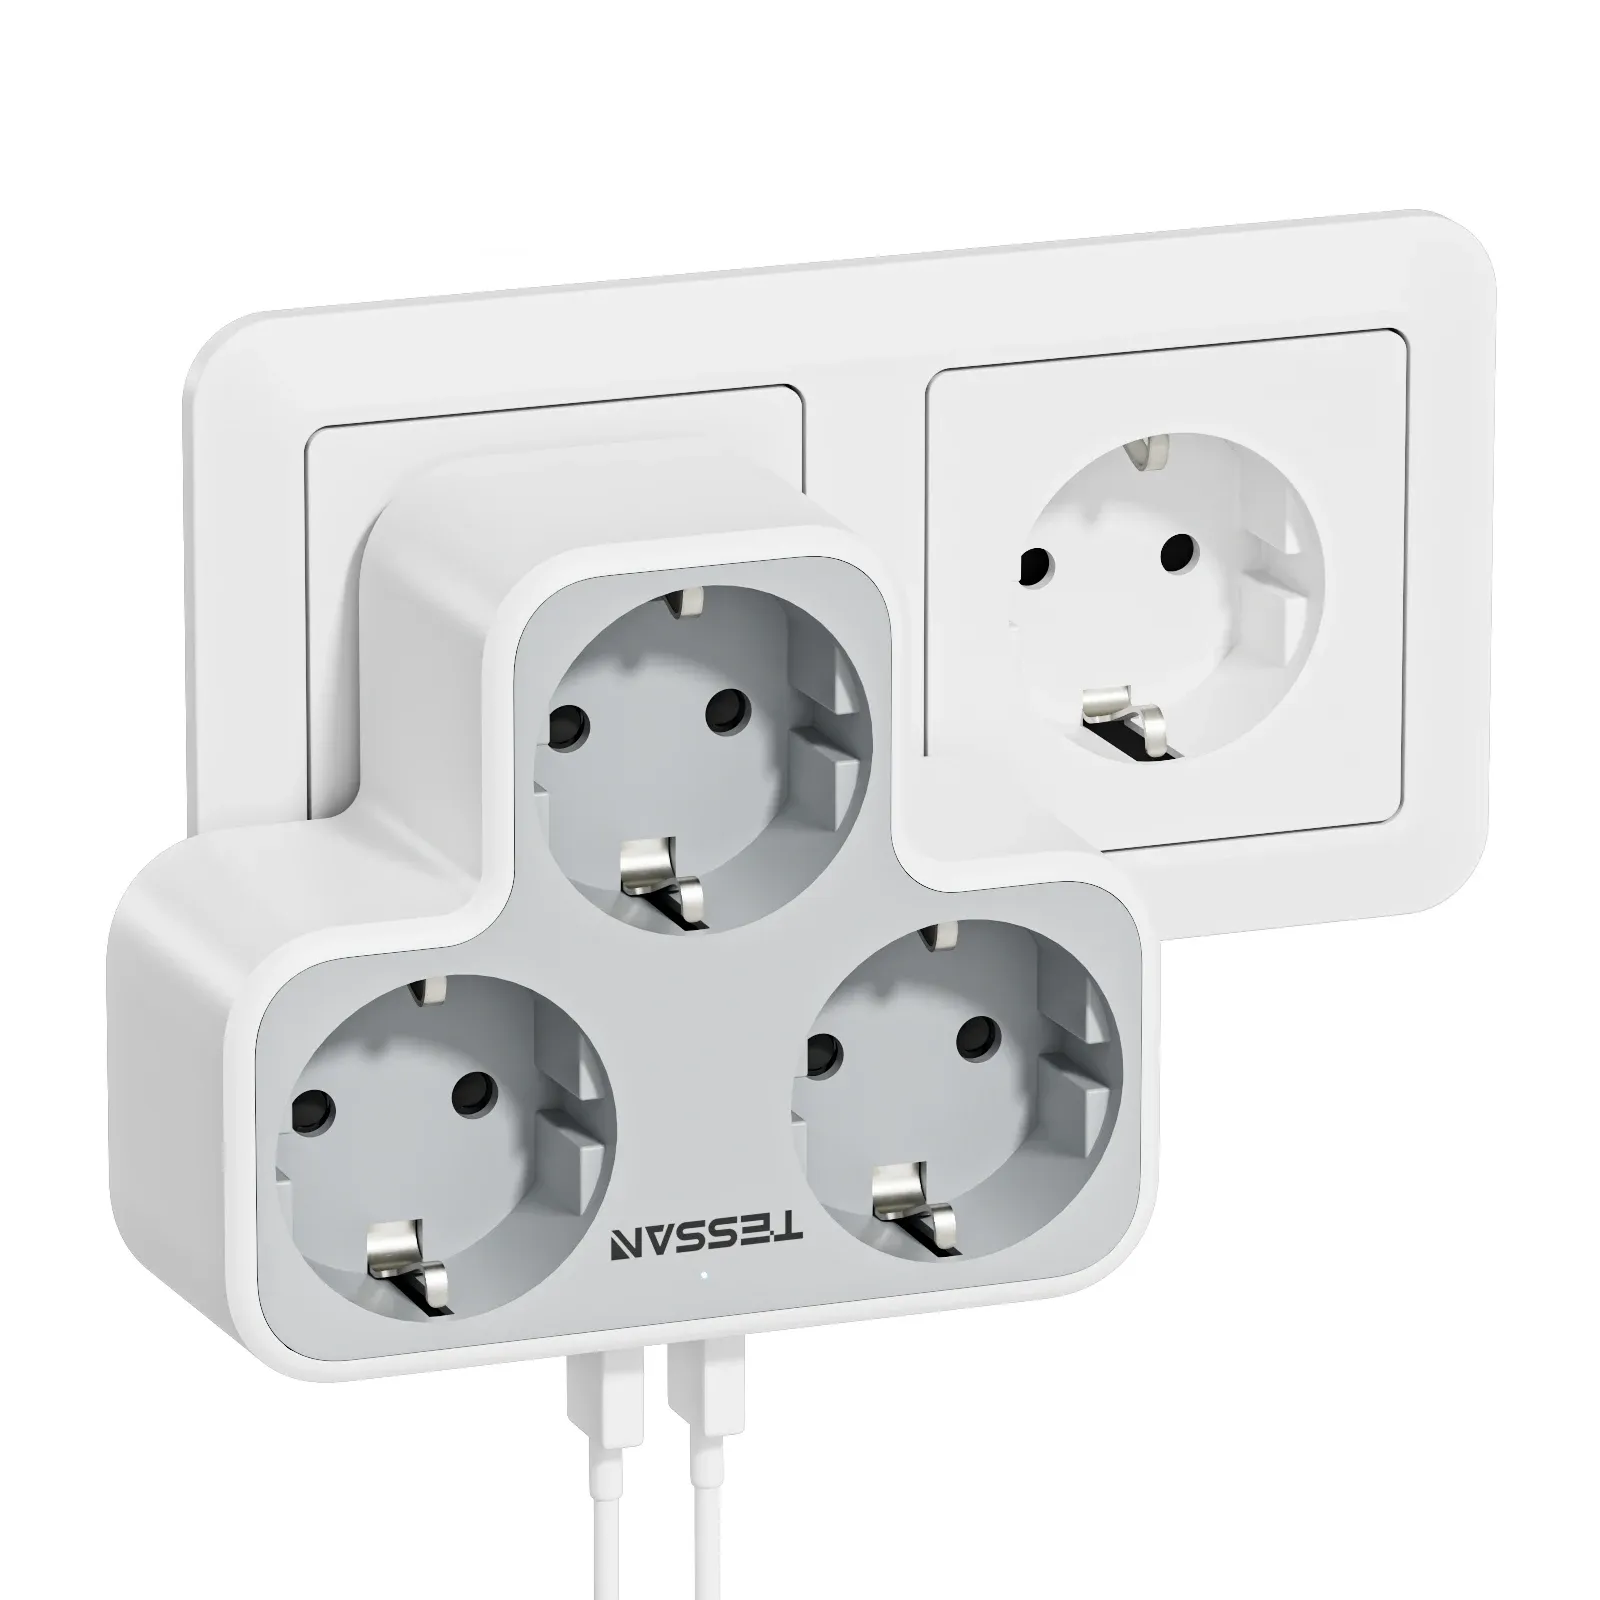 Adaptadores Tessan Multi Outlets Power Strip com portas USB de saída, adaptador de energia da parede de plugue da EU KR com proteção contra sobrecarga para casa